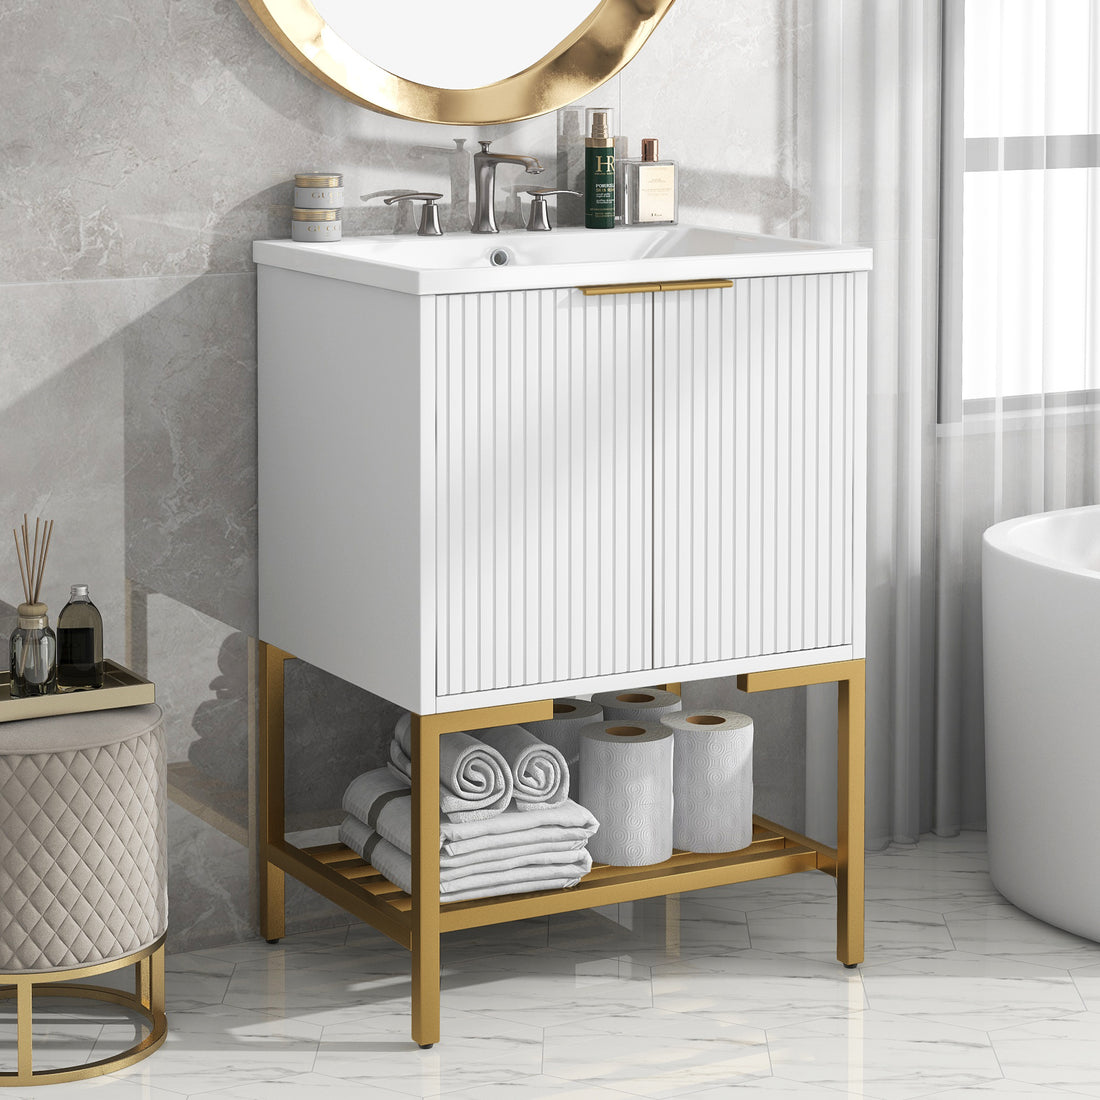 24" Bathroom Vanity with Sink, Bathroom Vanity Cabinet white-solid wood+mdf